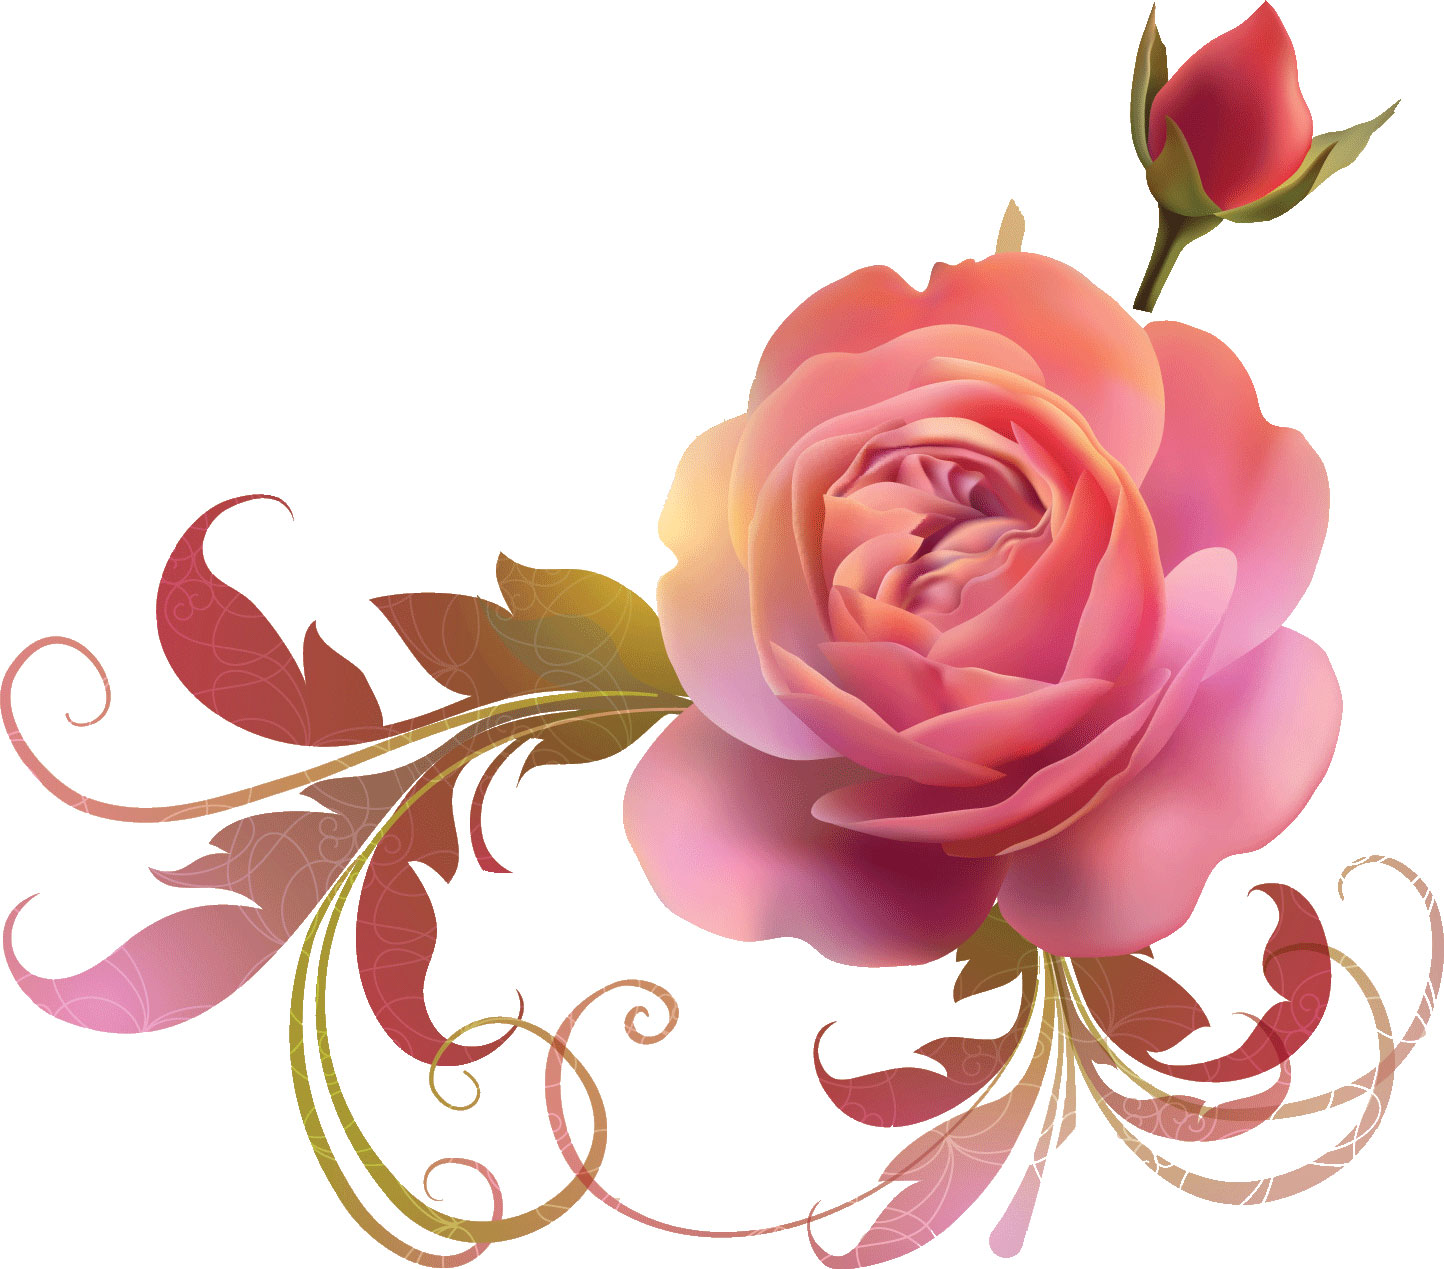 画像 : 『素材集』綺麗でかわいいバラのイラストまとめ - NAVER まとめ